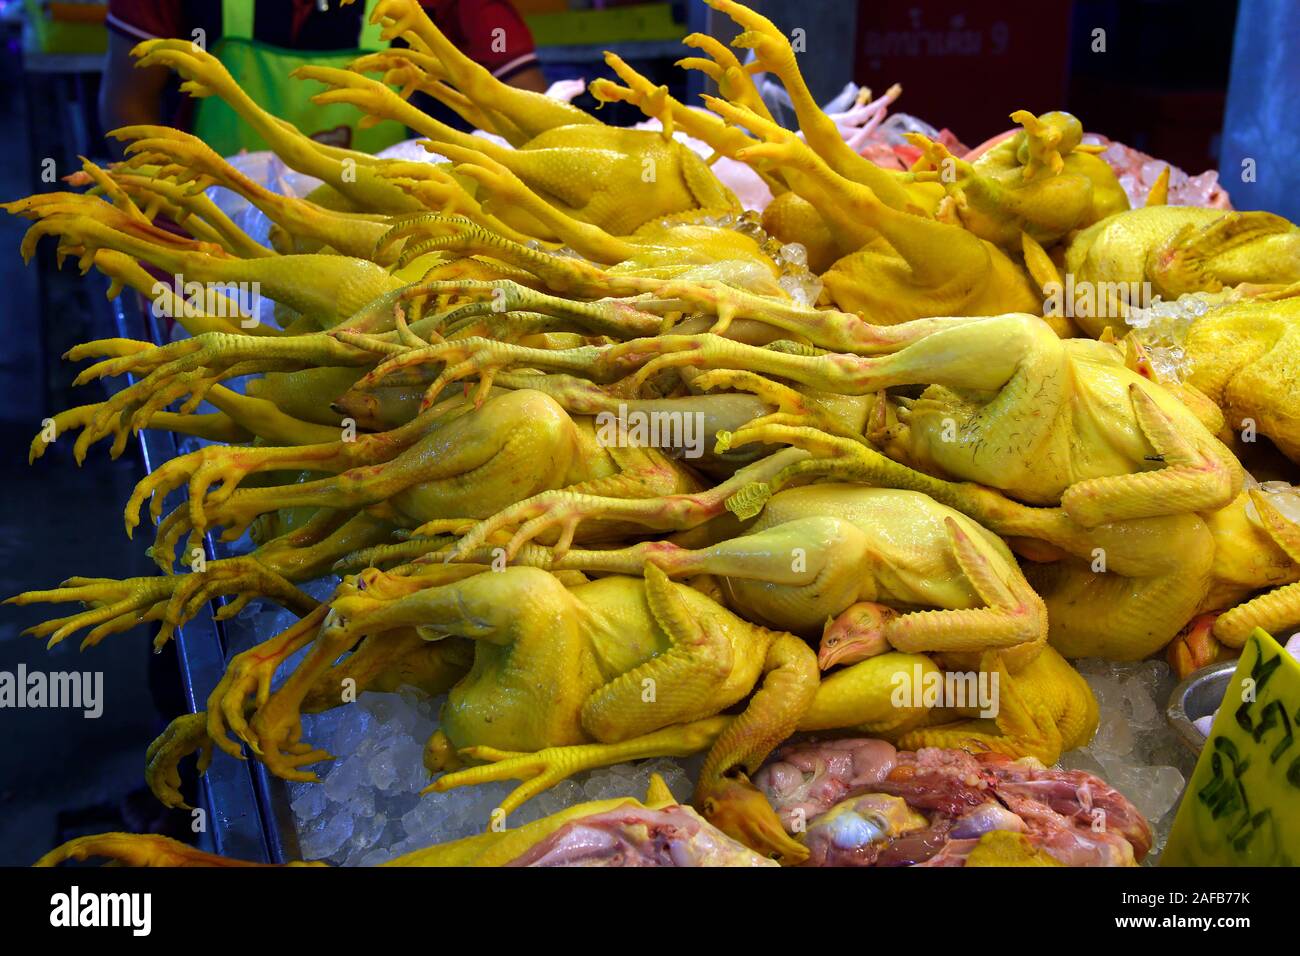 Frische Hühner auf dem Banzaan fresh market, Patong Beach, Phuket, Thailand Stock Photo